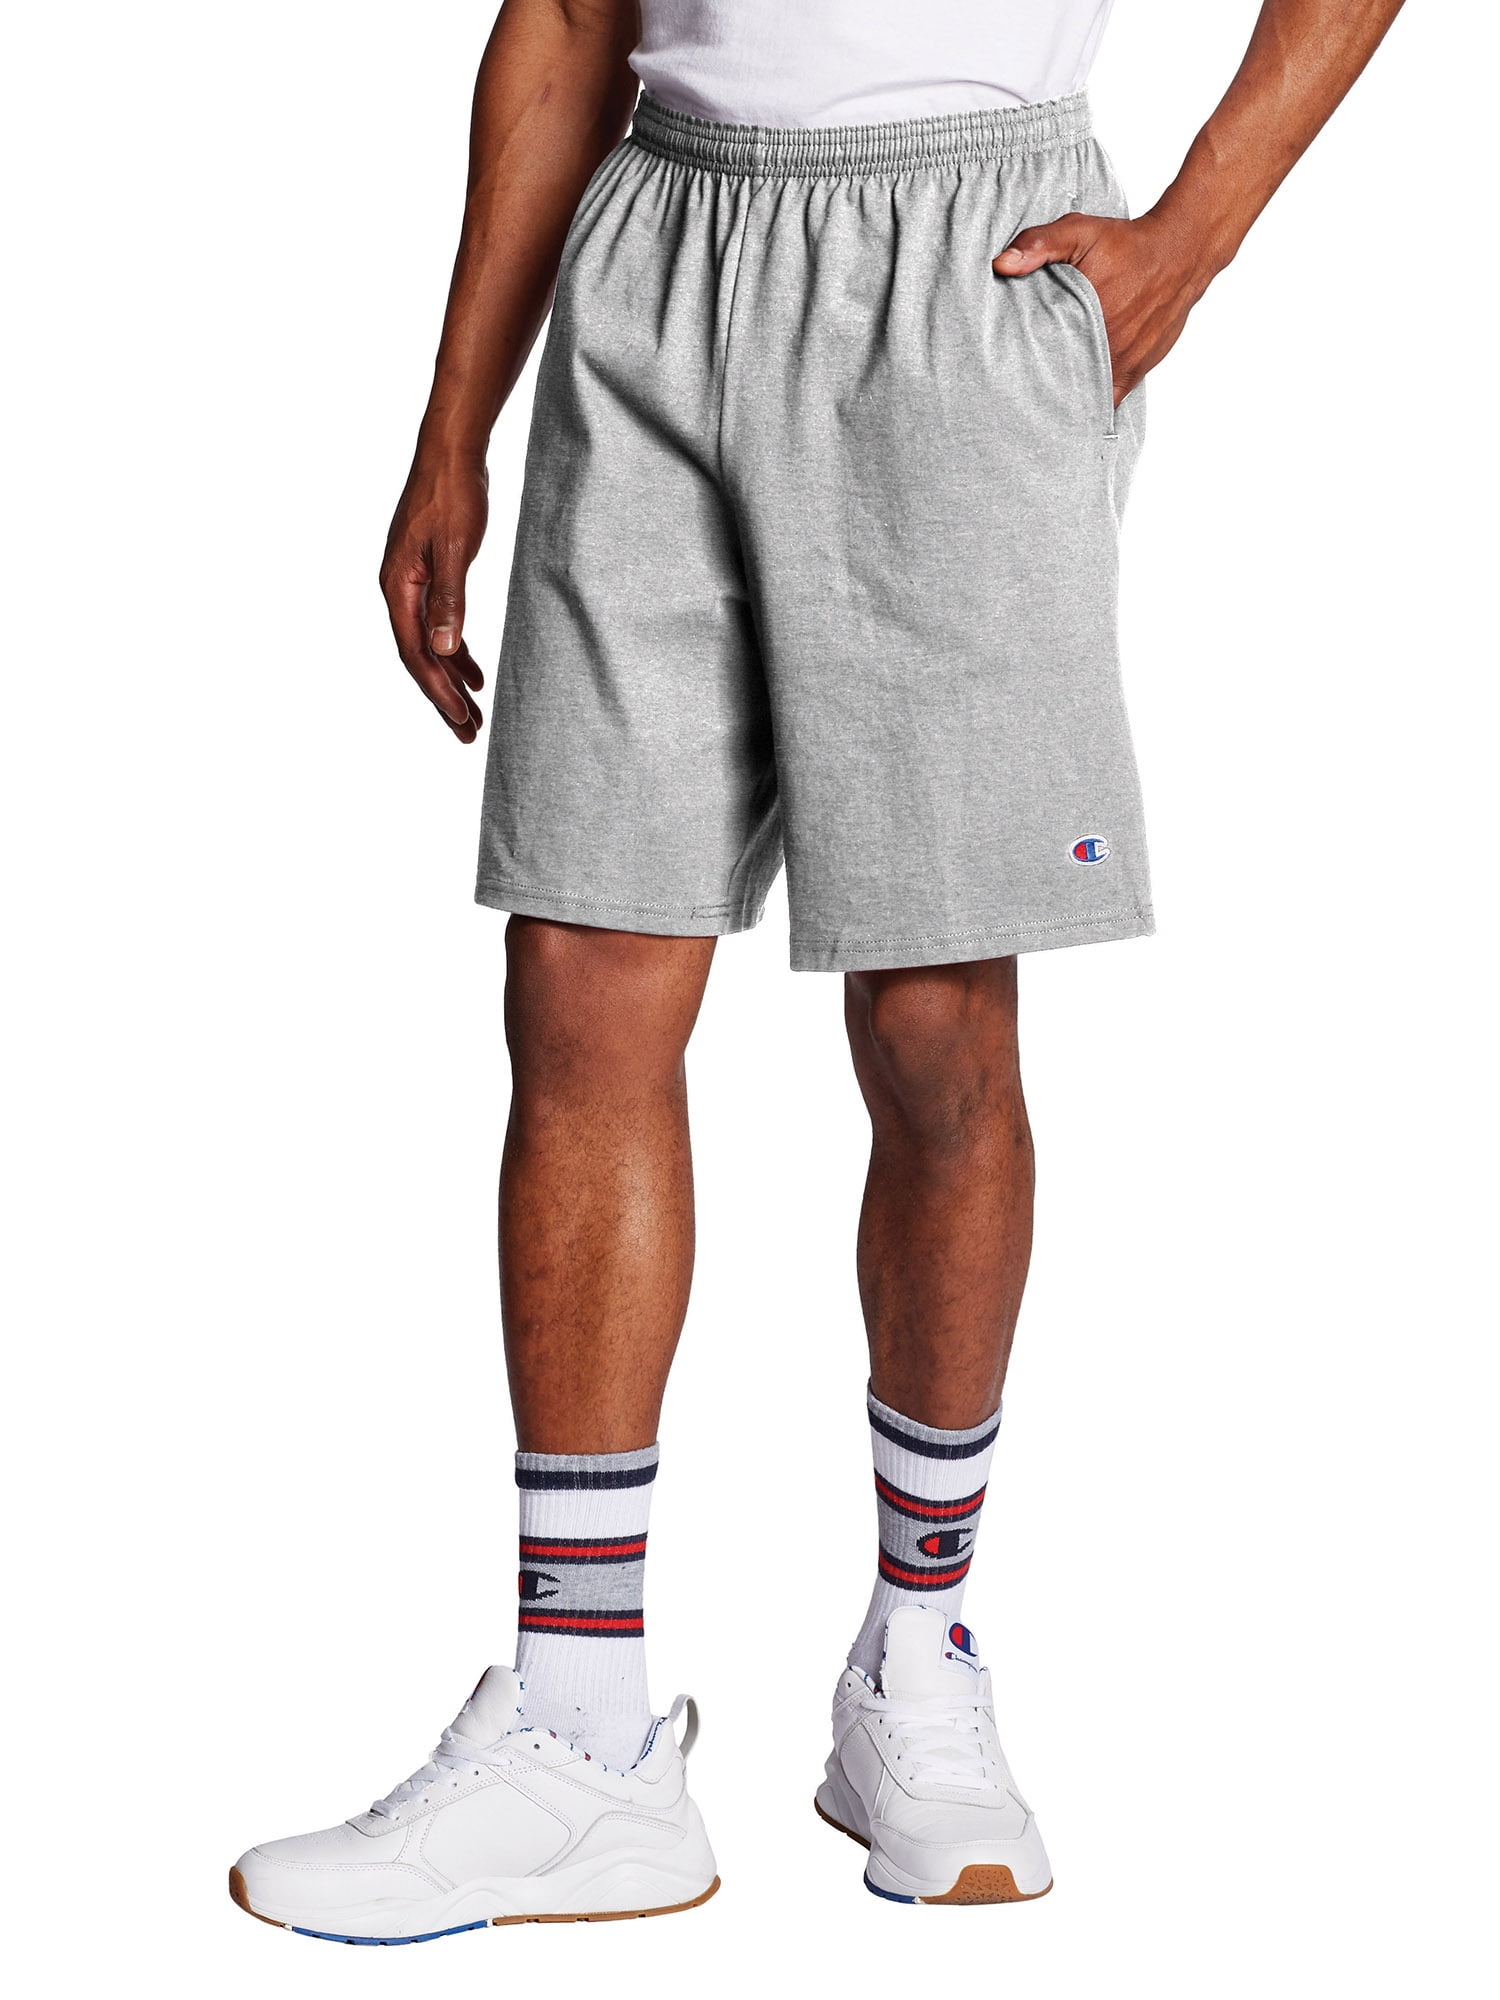 Mens Lightweight Fleece Cotton Shorts For Gym S-XL 